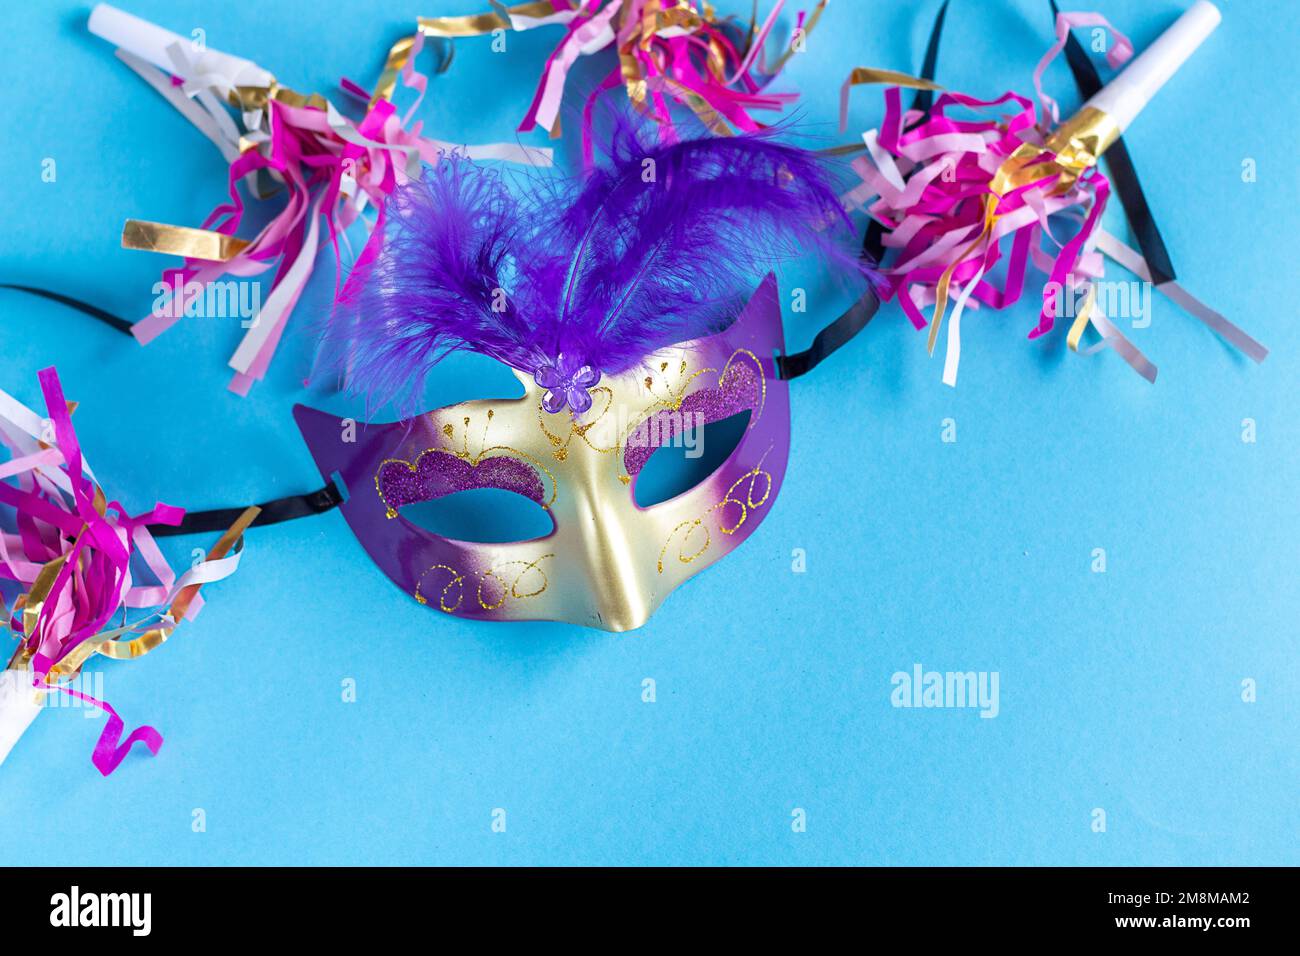 Maschera festiva per la festa del carnevale su sfondo blu. Sfondo carnevale del Mardi gras con maschere di carnevale. Piatto laico concetto carnevale. Foto Stock